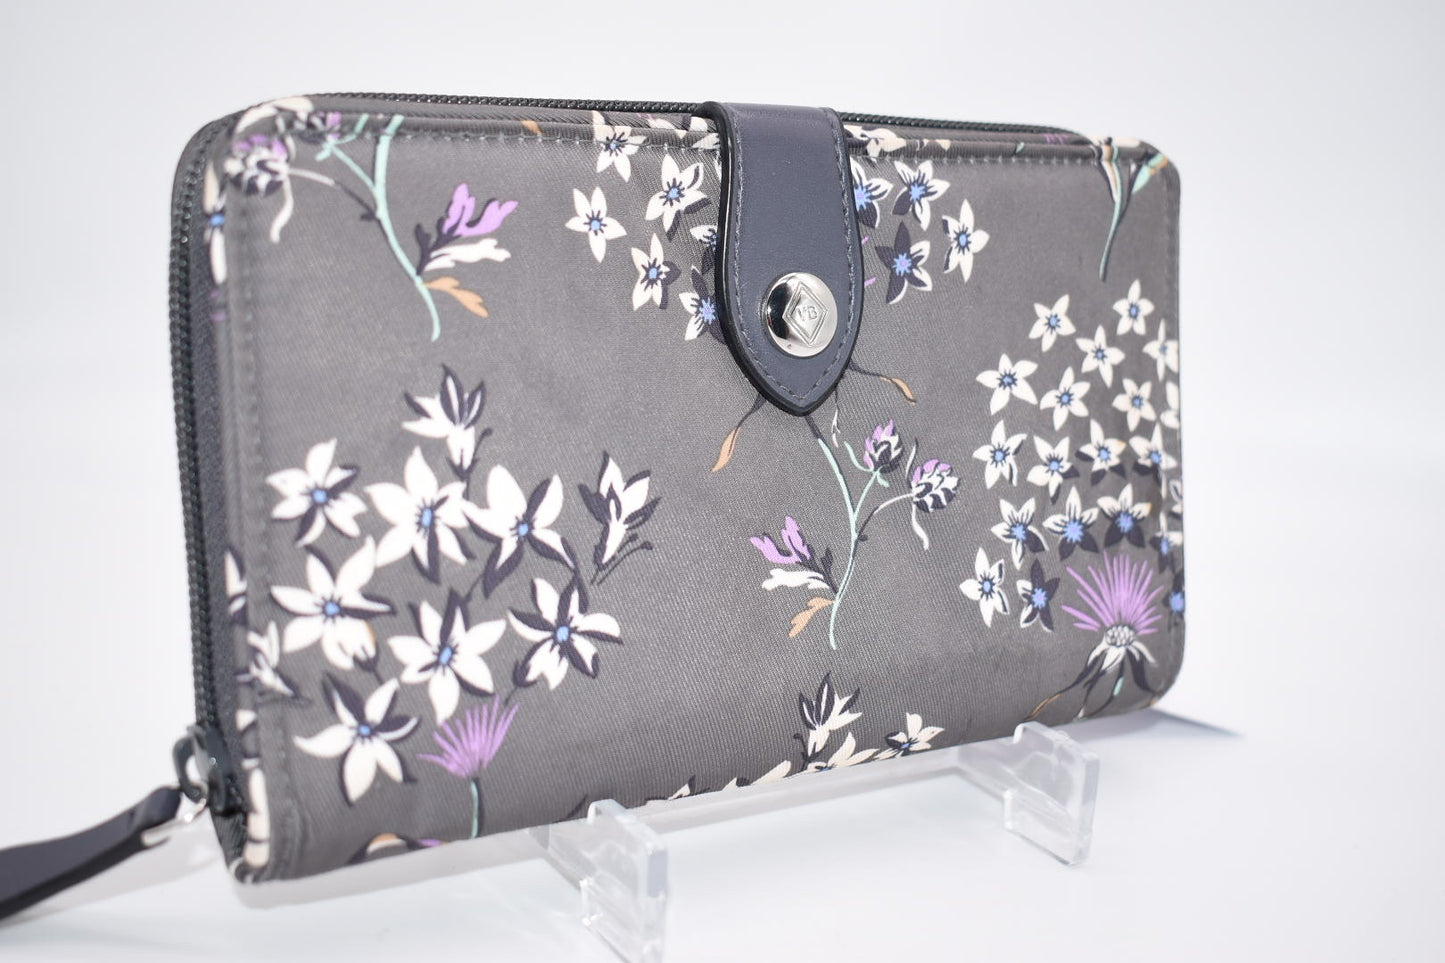 Vera Bradley RFID Midtown Snaptab Wallet in "Dandelion Wishes" Pattern